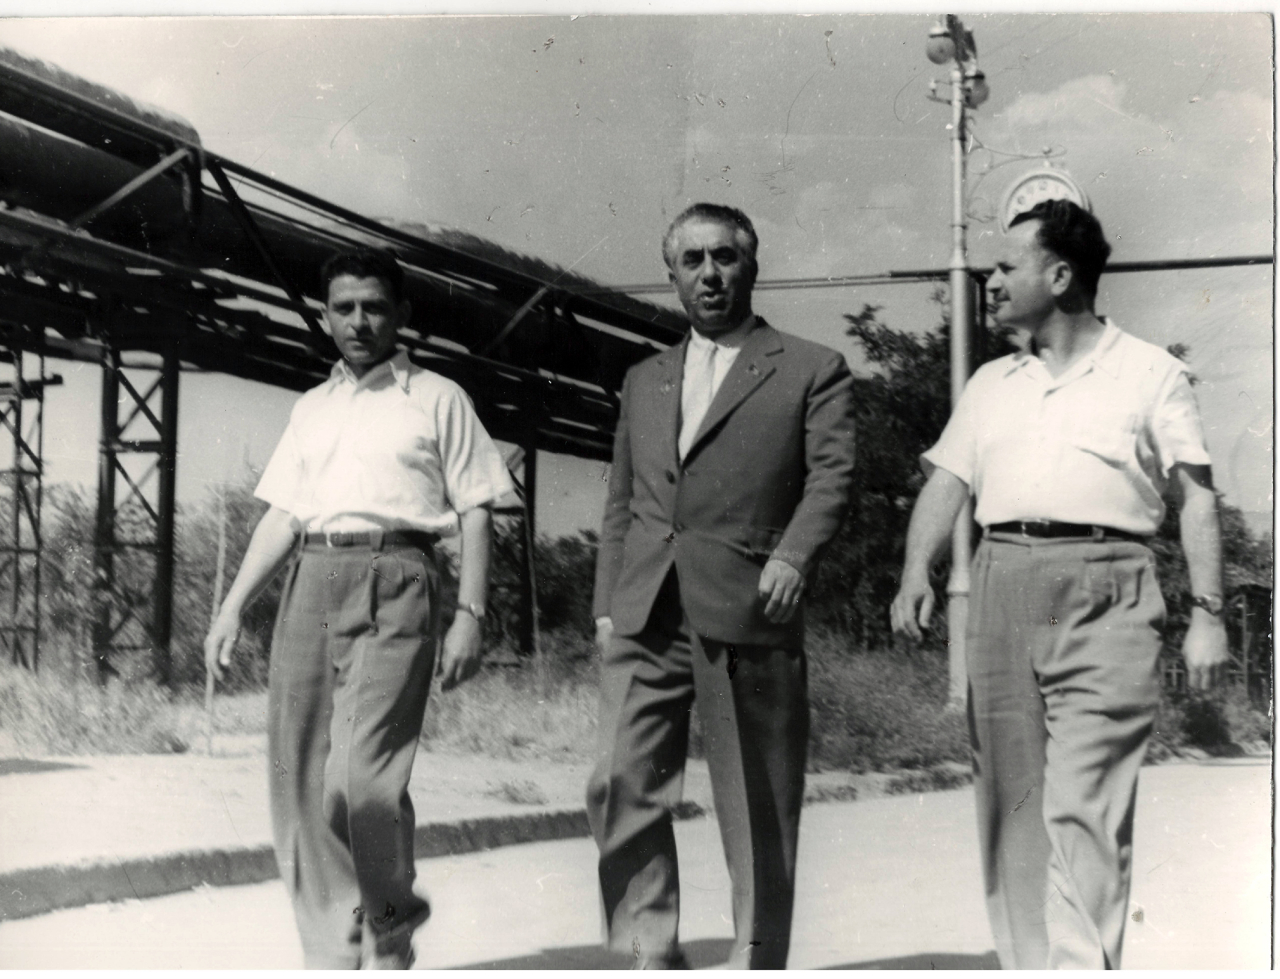 Լուսանկար. Ա. Խաչատրյանը Բ.Մուրադյանի (սինթետիկ կաուչուկի գործարանի տնօրեն) և Հ. Սահակյանի (նույն գործարանի գլխավոր  բժիշկ) հետ գործարանի տարածքում